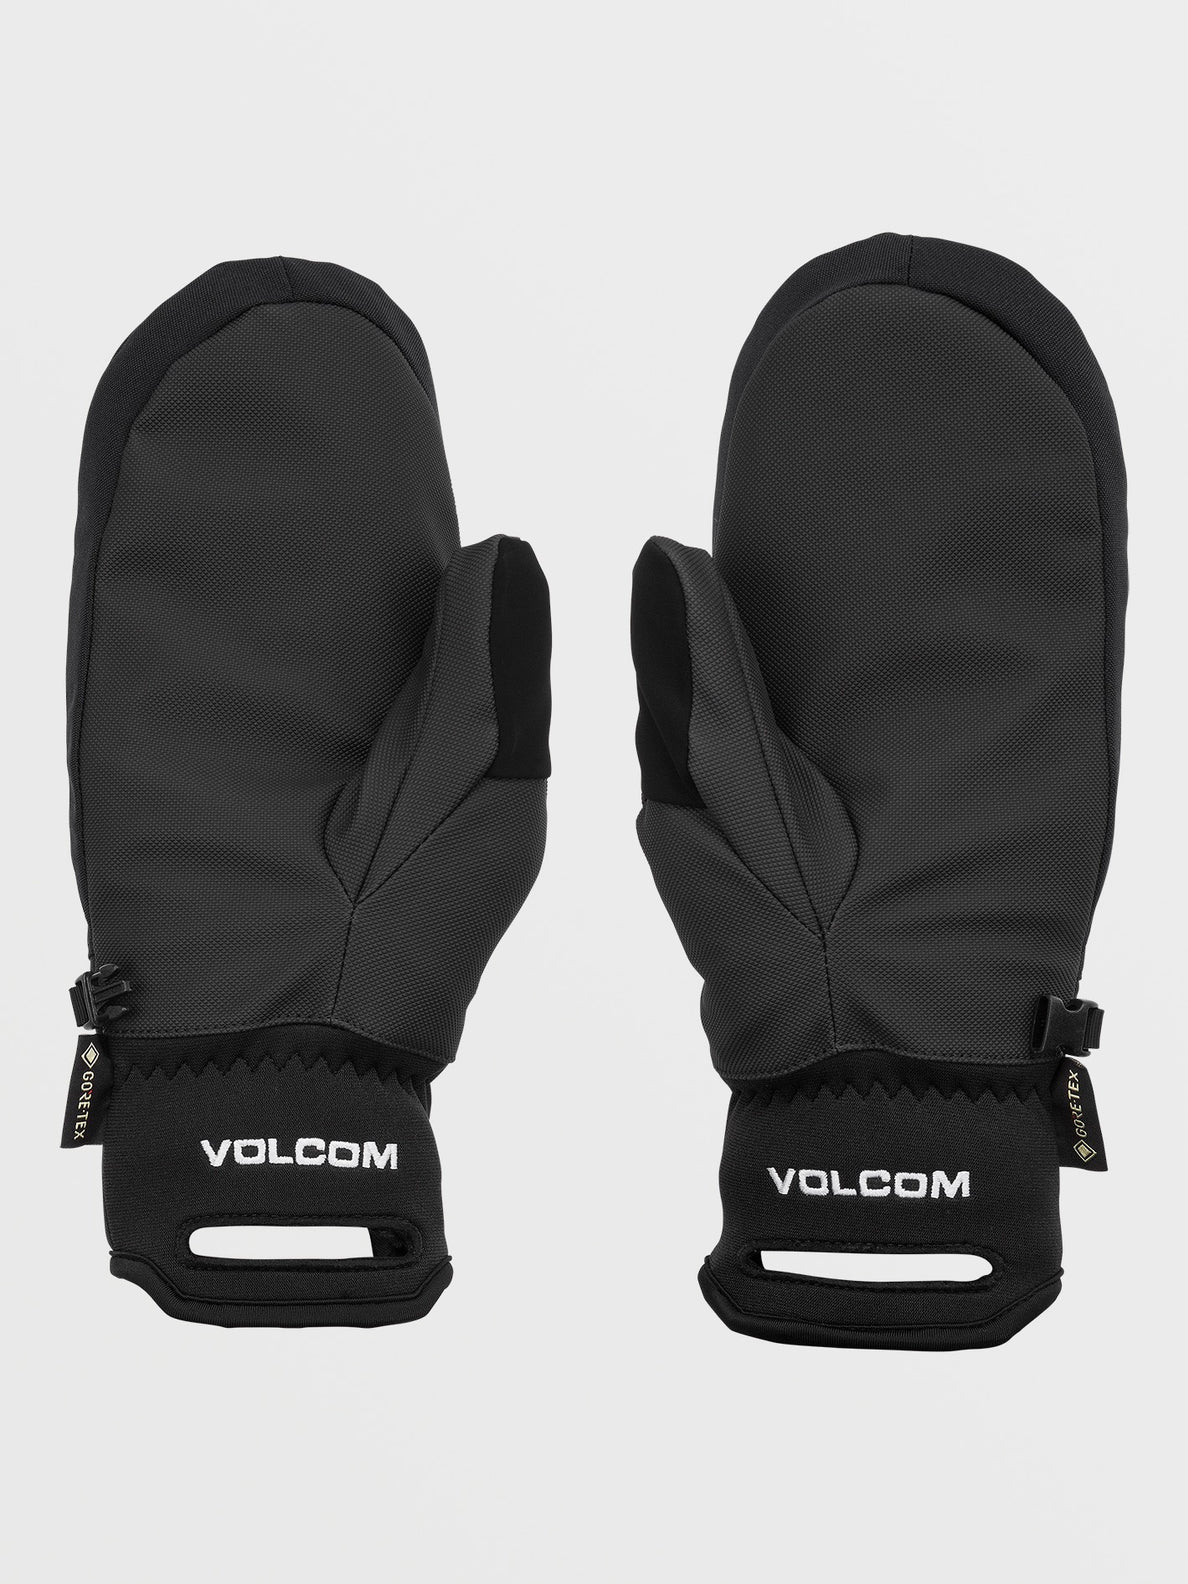 Volcom Stay Dry Gore-Tex Mitt handschoenen zwart